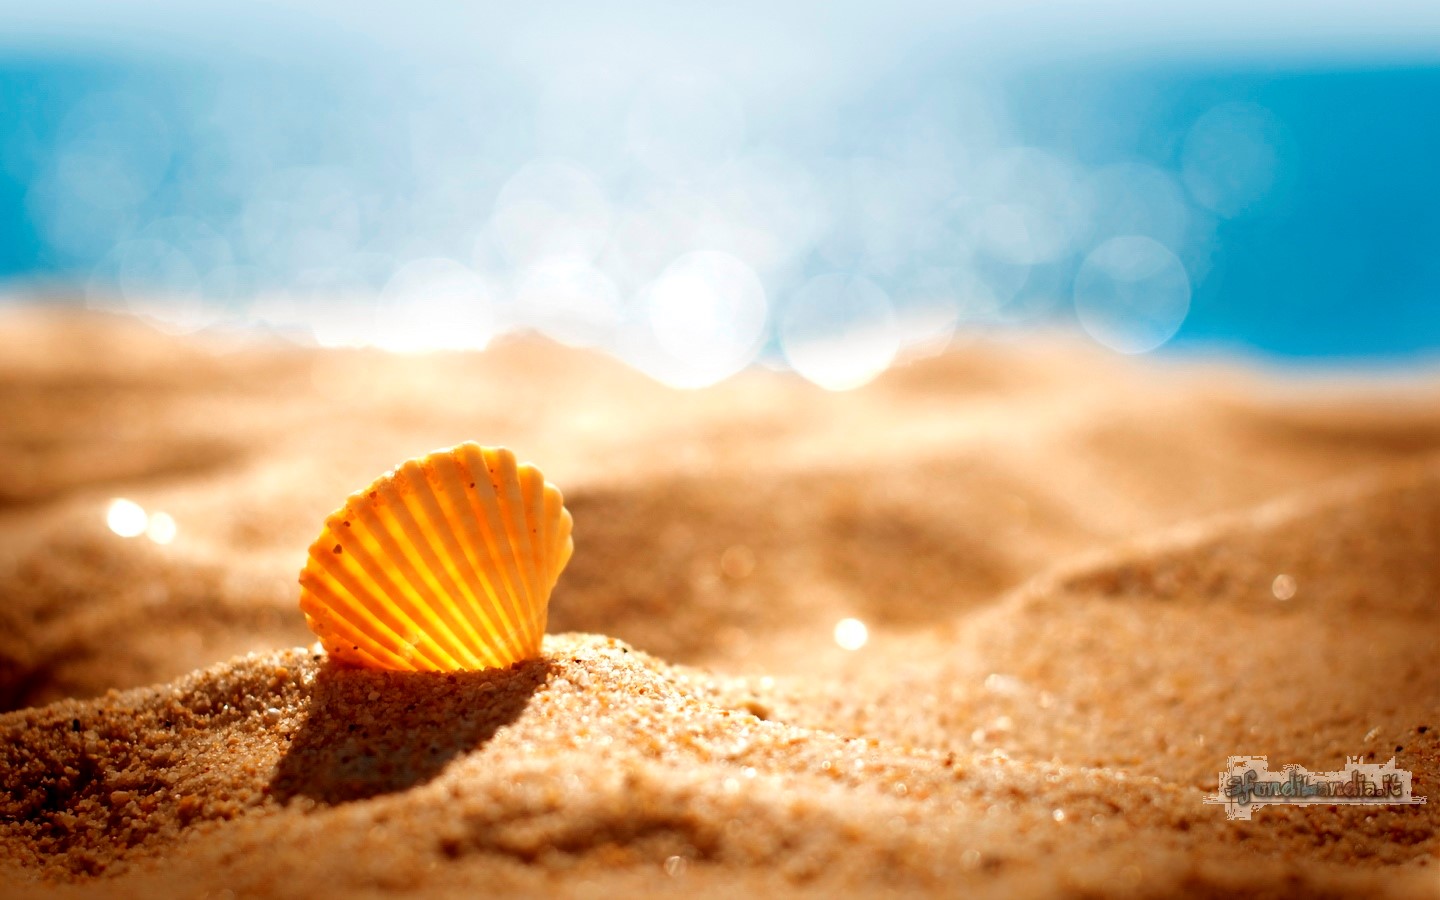 Shell On Beach